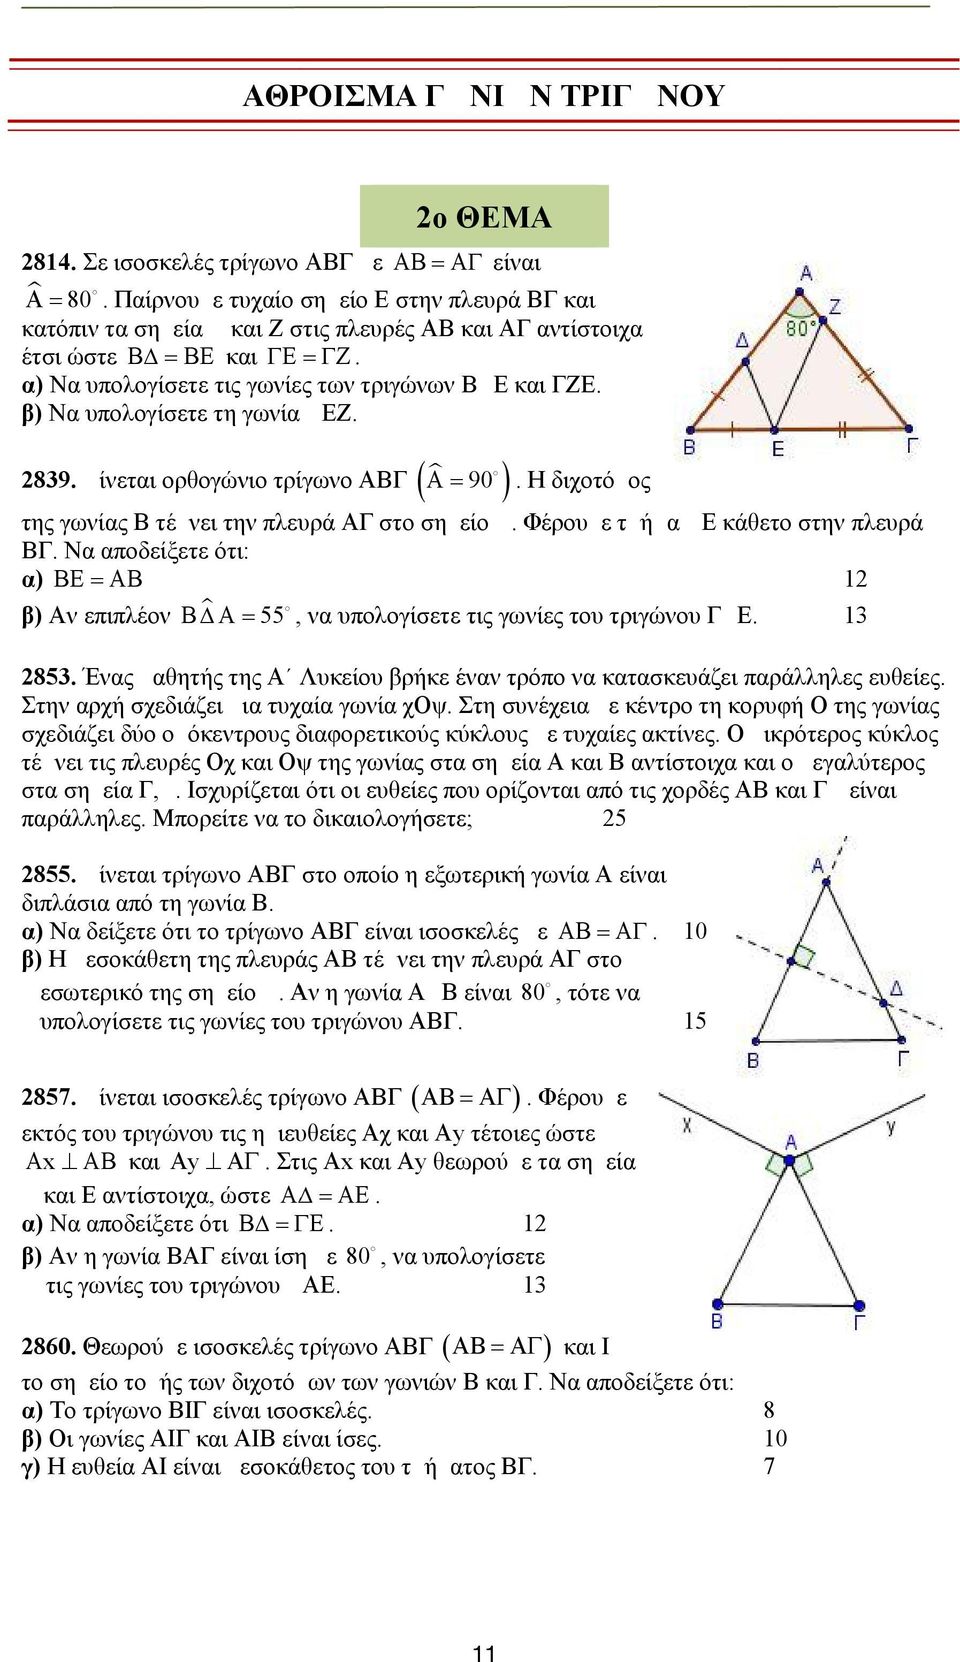 β) Να υπολογίσετε τη γωνία ΔΕΖ. 839. Δίνεται ορθογώνιο τρίγωνο ΑΒΓ. Η διχοτόμος της γωνίας Β τέμνει την πλευρά ΑΓ στο σημείο Δ. Φέρουμε τμήμα ΔΕ κάθετο στην πλευρά ΒΓ.